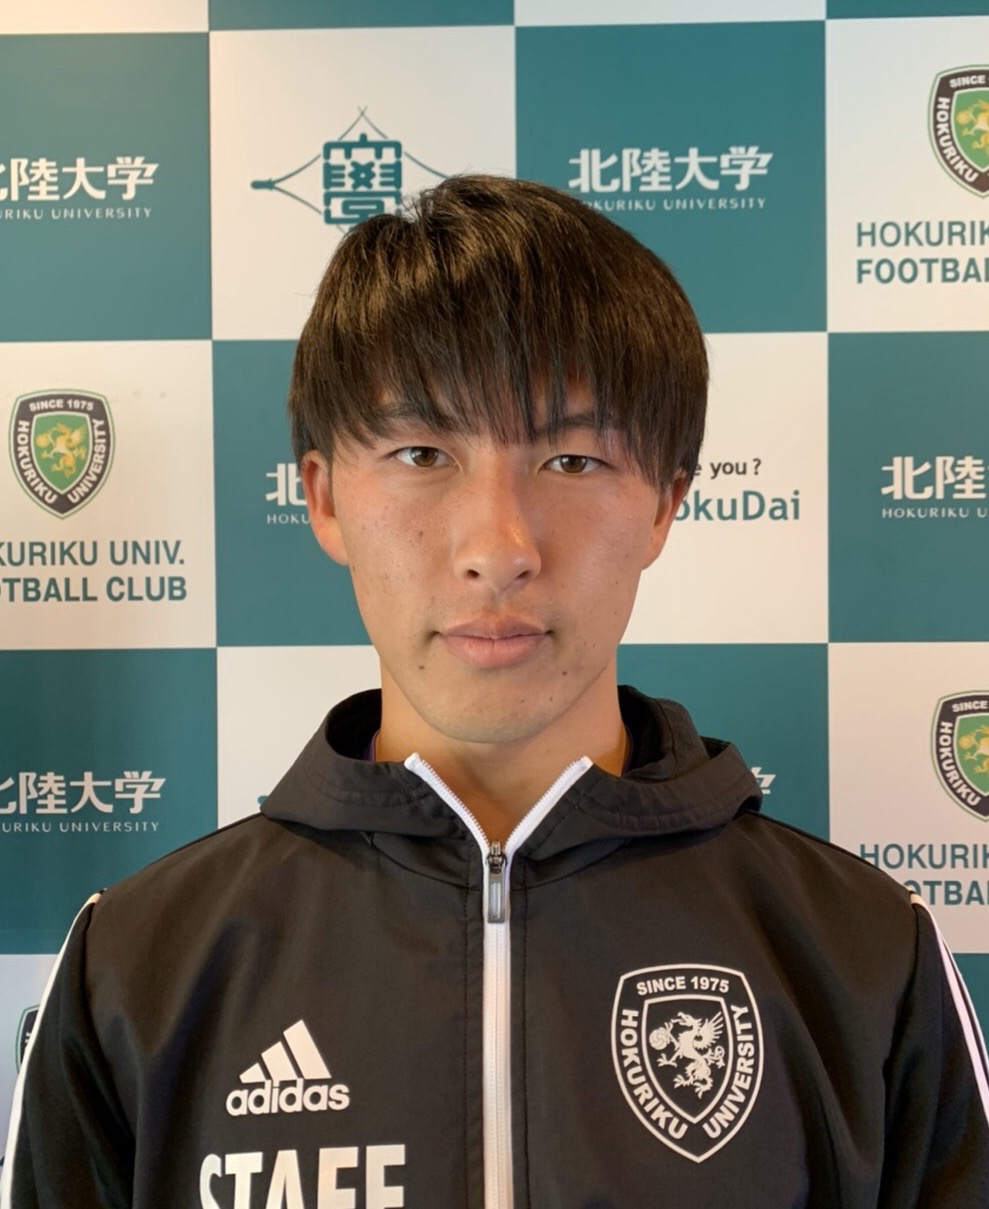 シーズン 新監督就任のお知らせ 福山シティフットボールクラブ 公式ウェブサイト